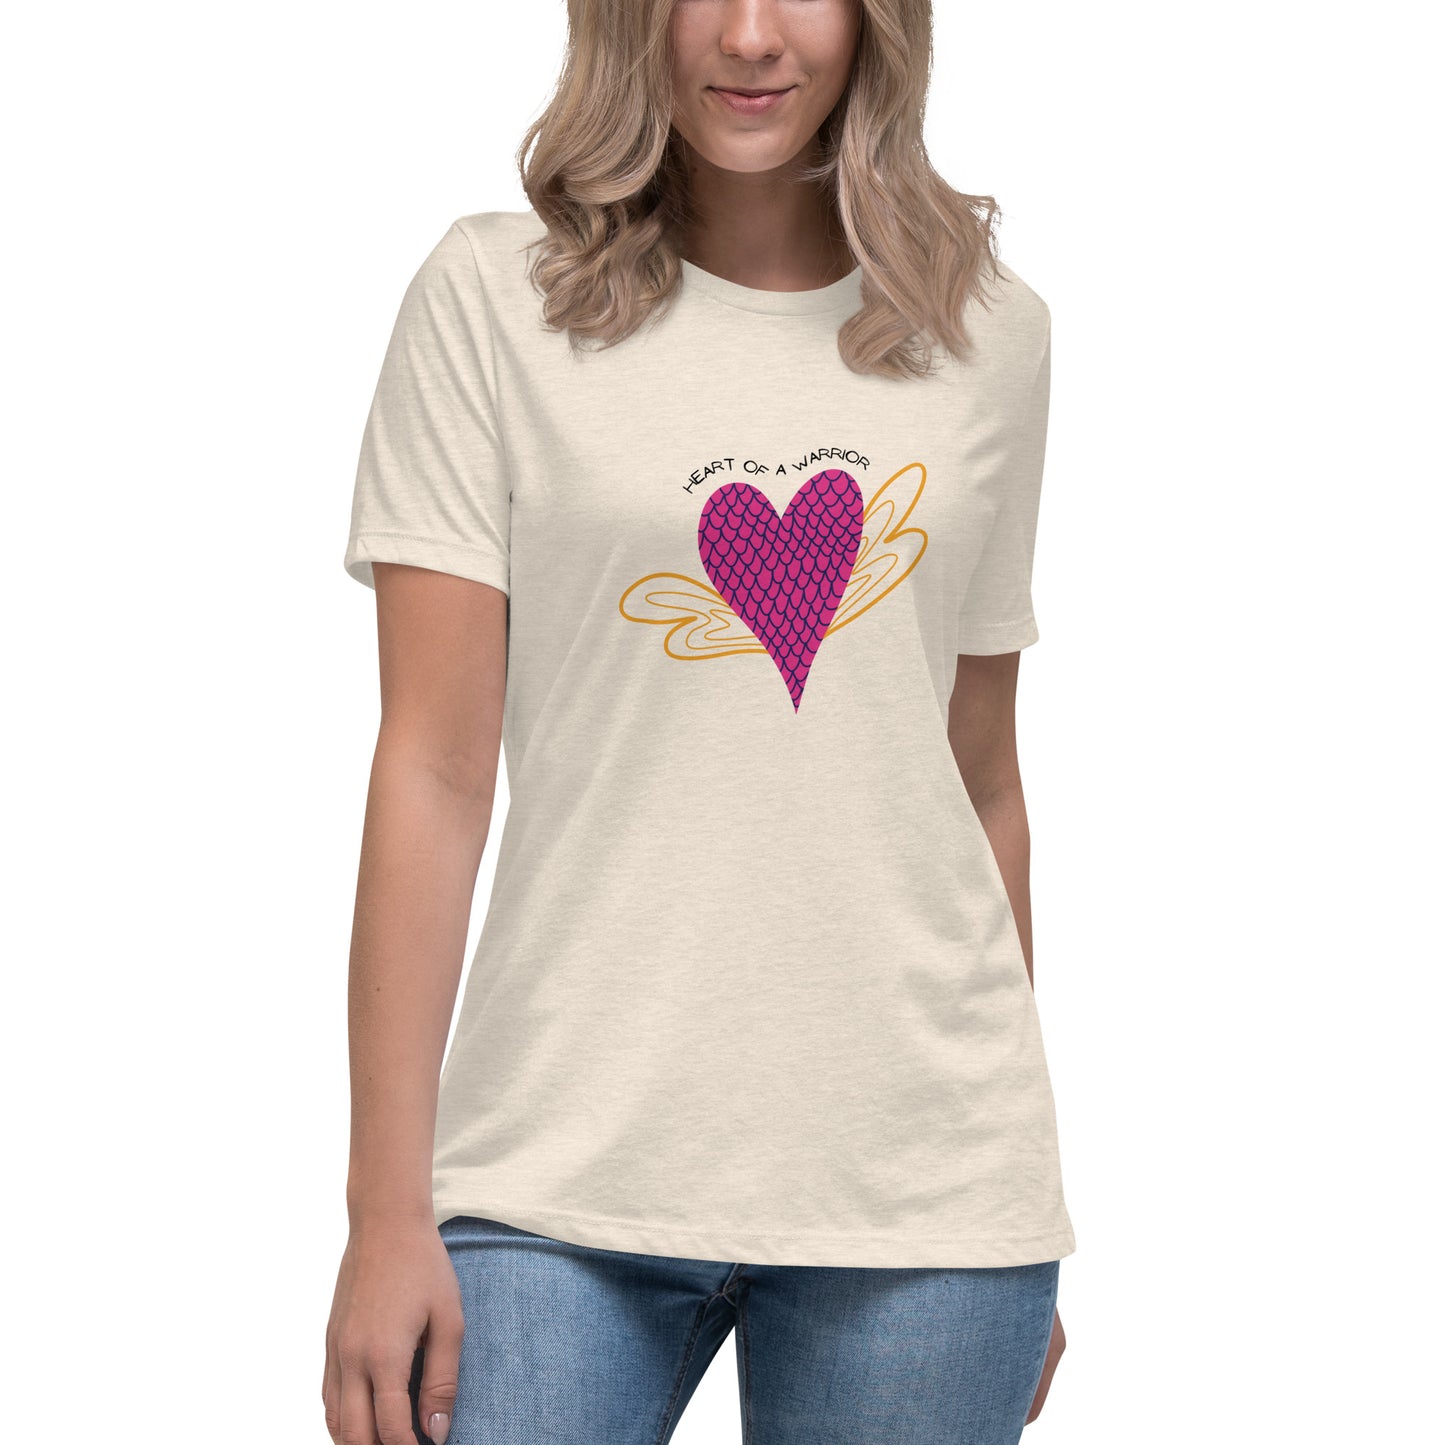 Heart of a Warrior Women's Relaxed T-Shirt